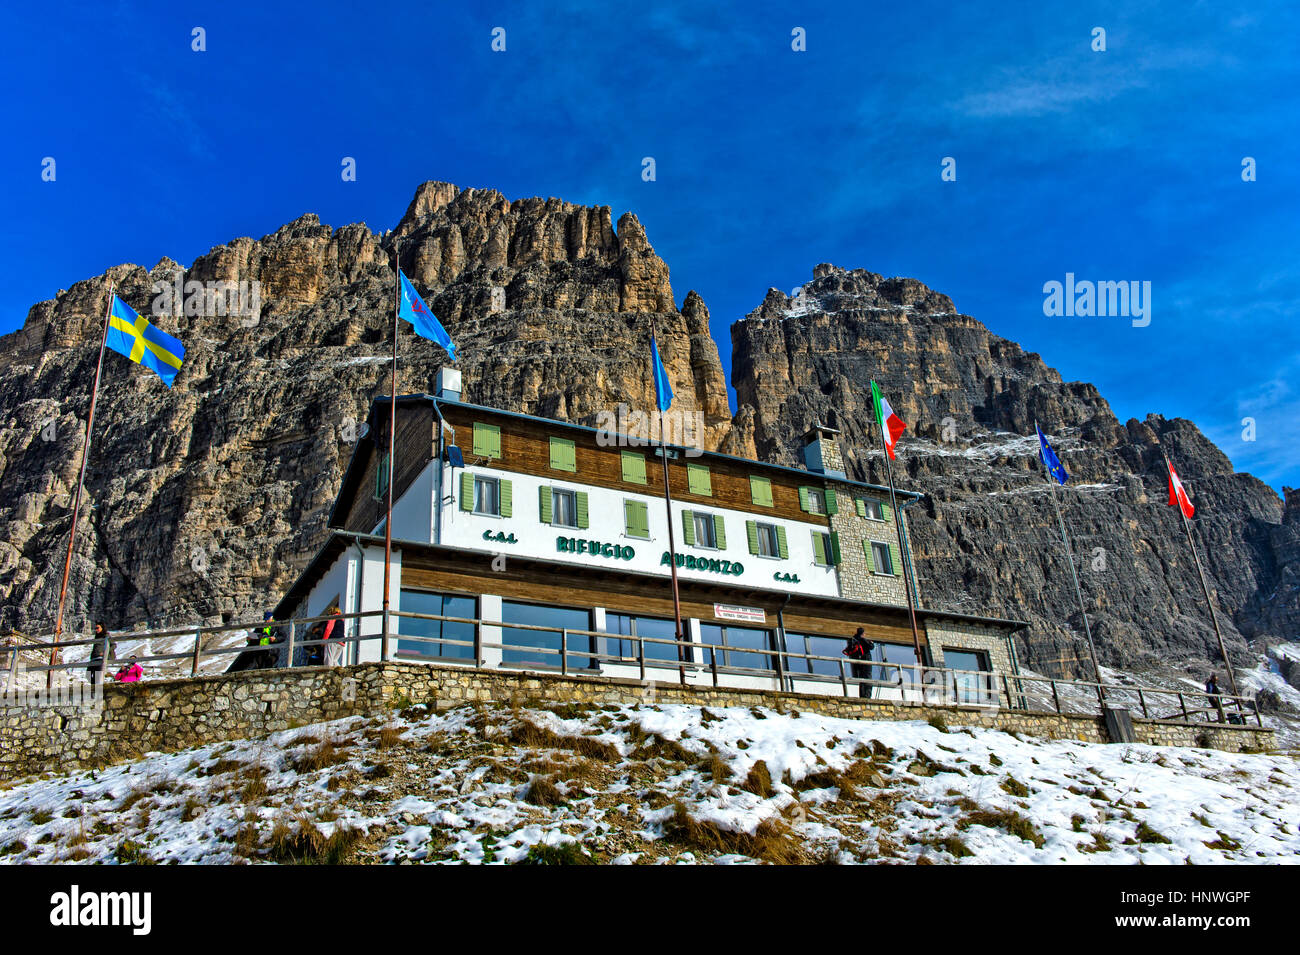 Cabaña de montaña Rifugio Auronzo debajo de los tres picos, montañas Dolomitas, Tirol del Sur, el Alto Adige, Italia Foto de stock